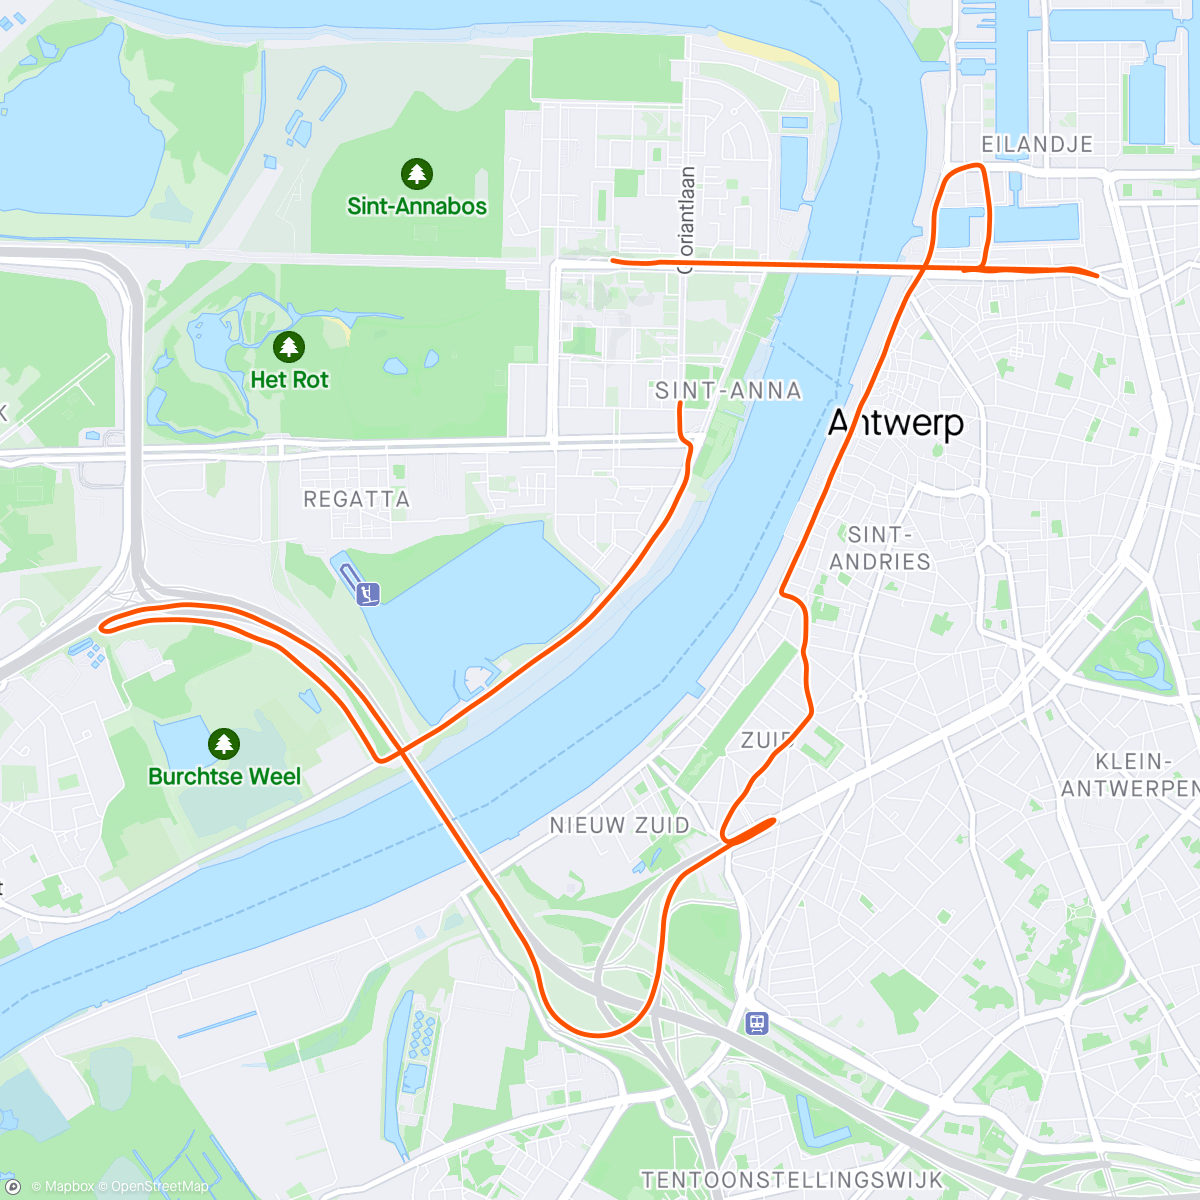 「10 miles antwerpen」活動的地圖